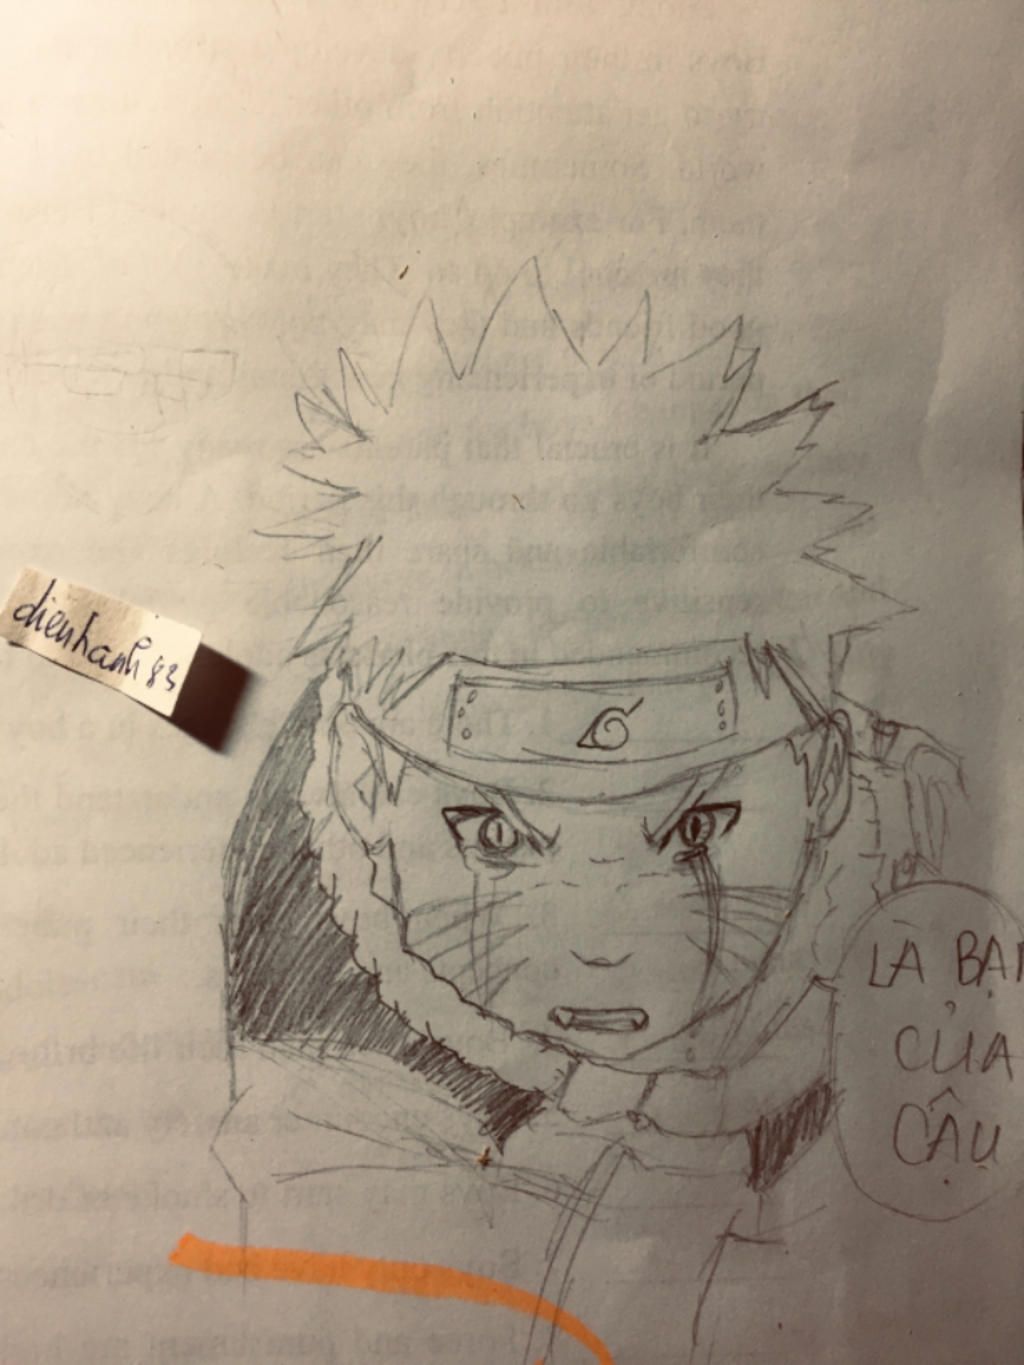 Hình vẽ Naruto bằng bút chì đã thể hiện công phu và tài hoa của họa sĩ. Hình ảnh đã tạo nên một trong những nhân vật phổ biến nhất trong nghệ thuật anime. Hãy đắm chìm vào thế giới của Naruto và cùng chiêm ngưỡng tinh hoa của truyện tranh Nhật Bản qua bức tranh!